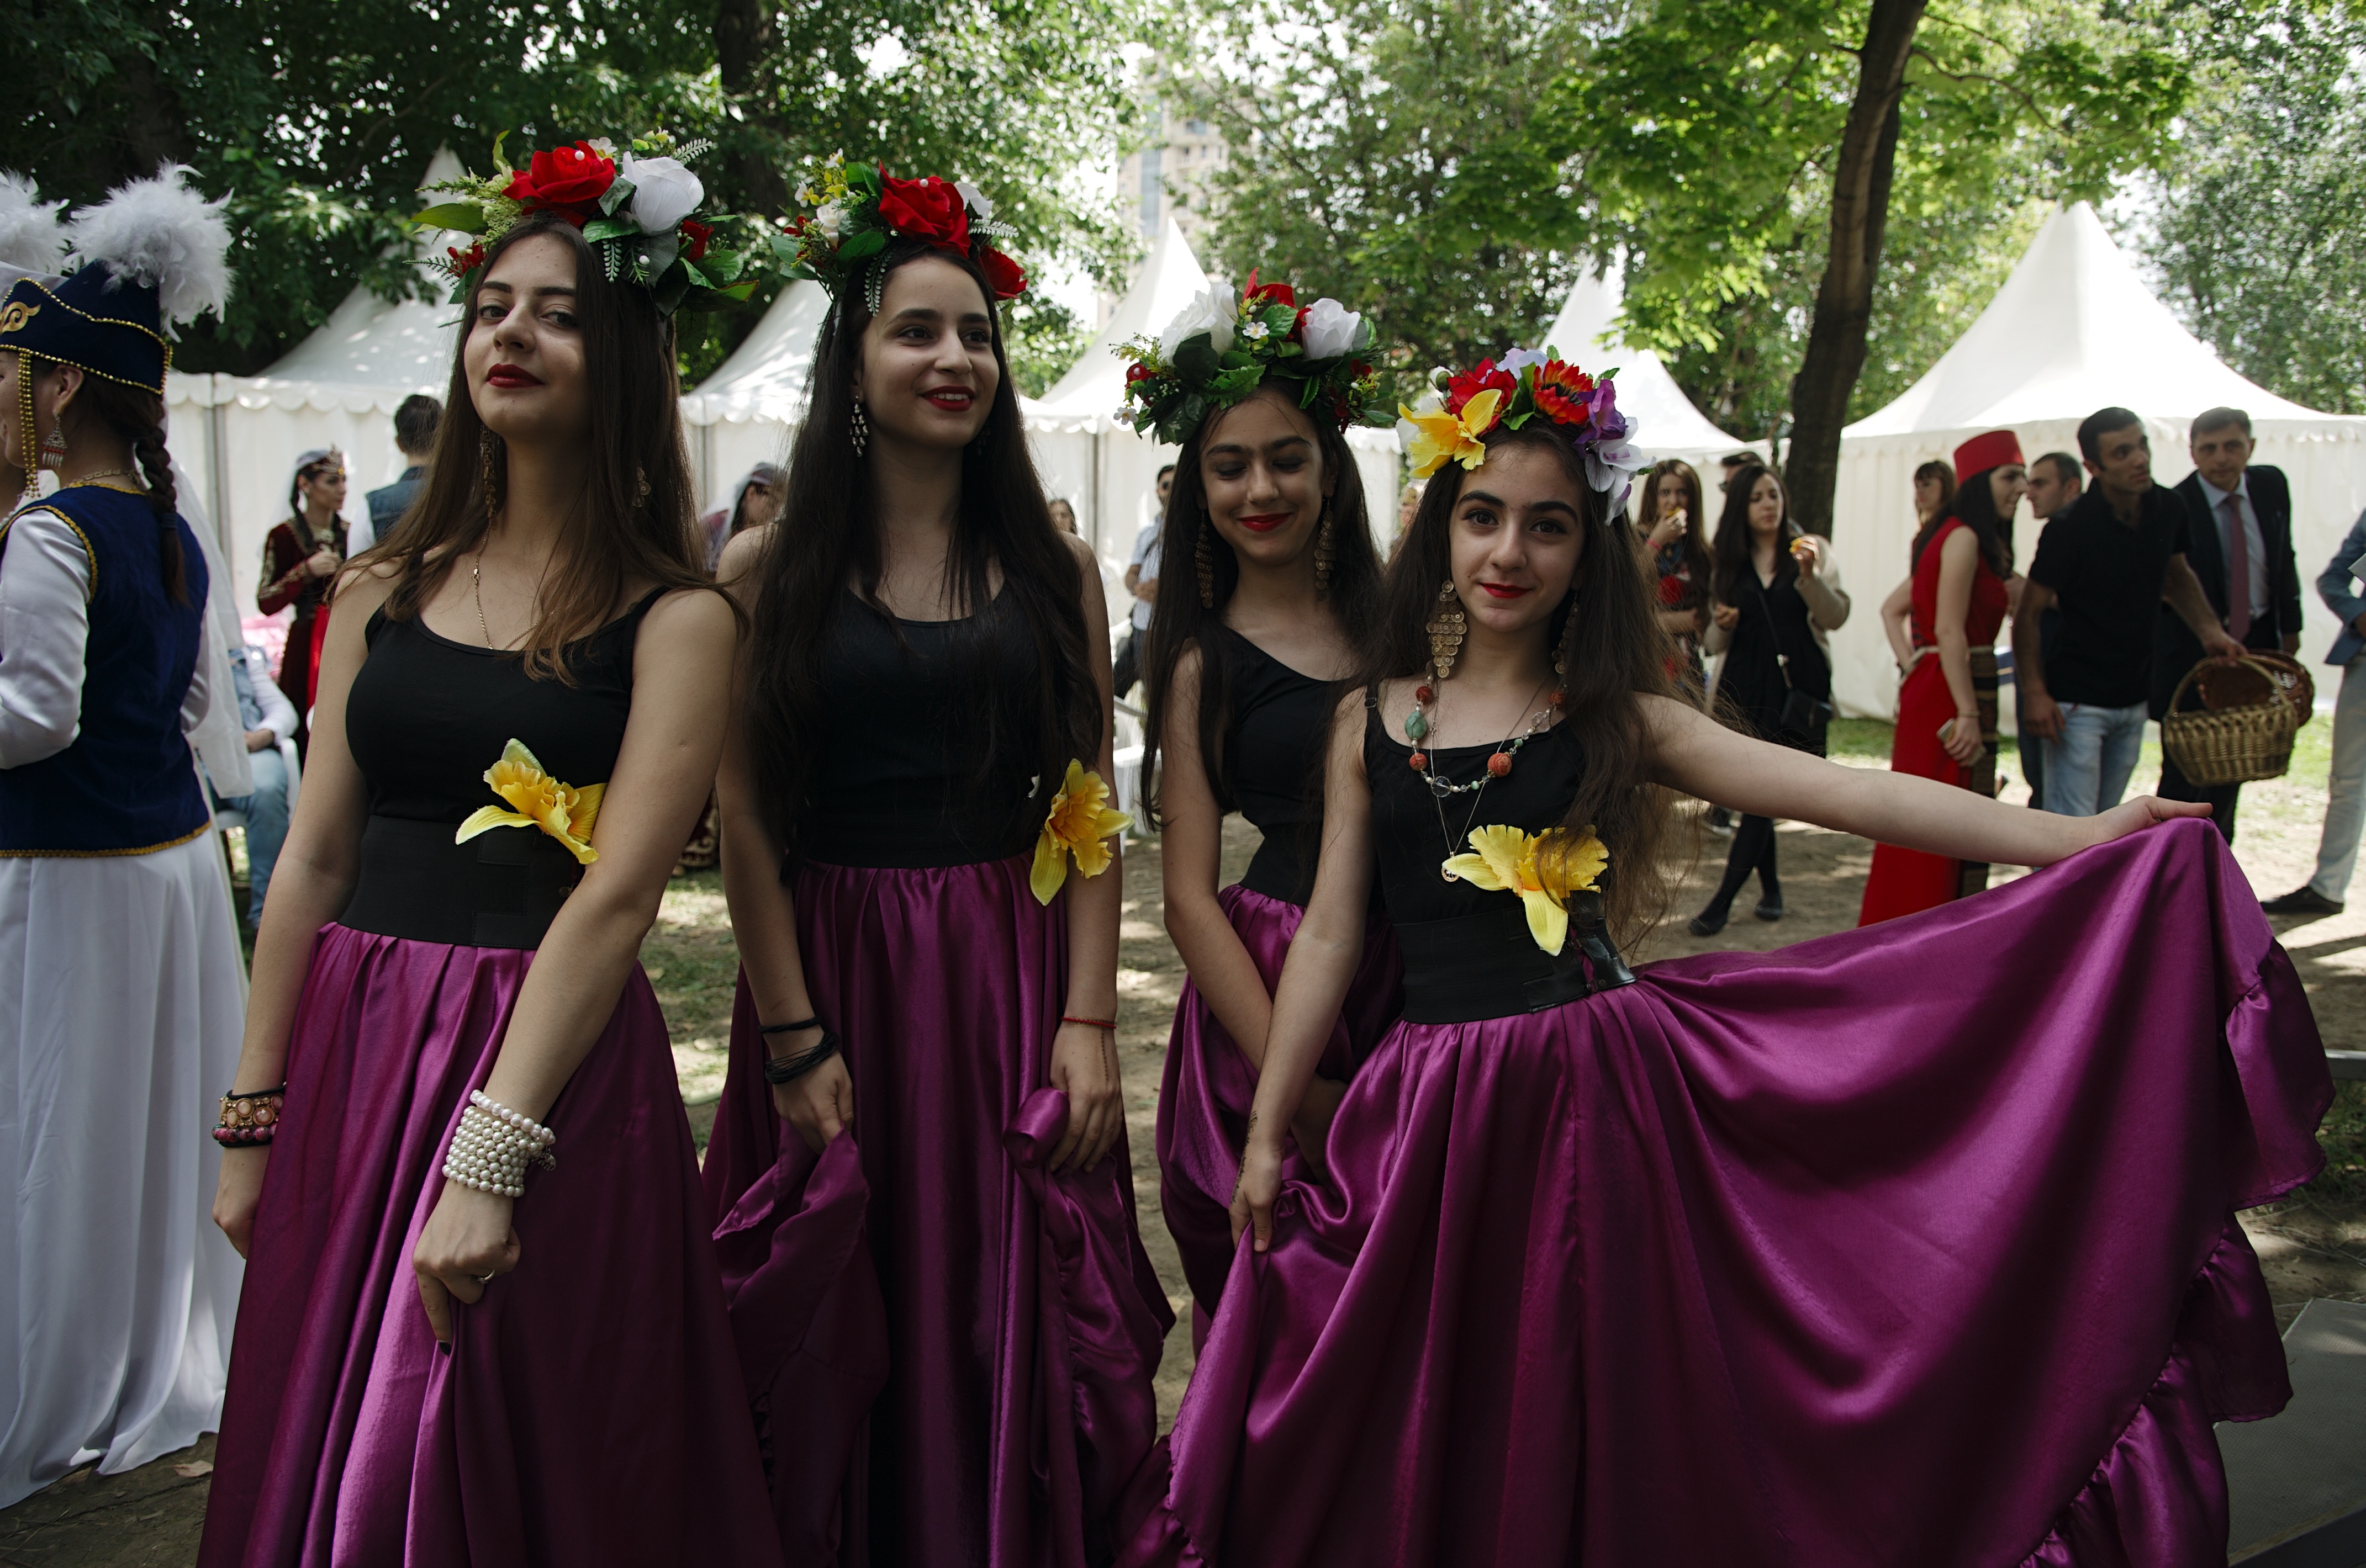 10 июля 2016 года. Девушки из армянского танцевального ансамбля "Айордик" готовятся к выходу на сцену, чтобы исполнить яркий национальный танец для посетителей межнационального праздника "Абрикос" в парке "Музеон"